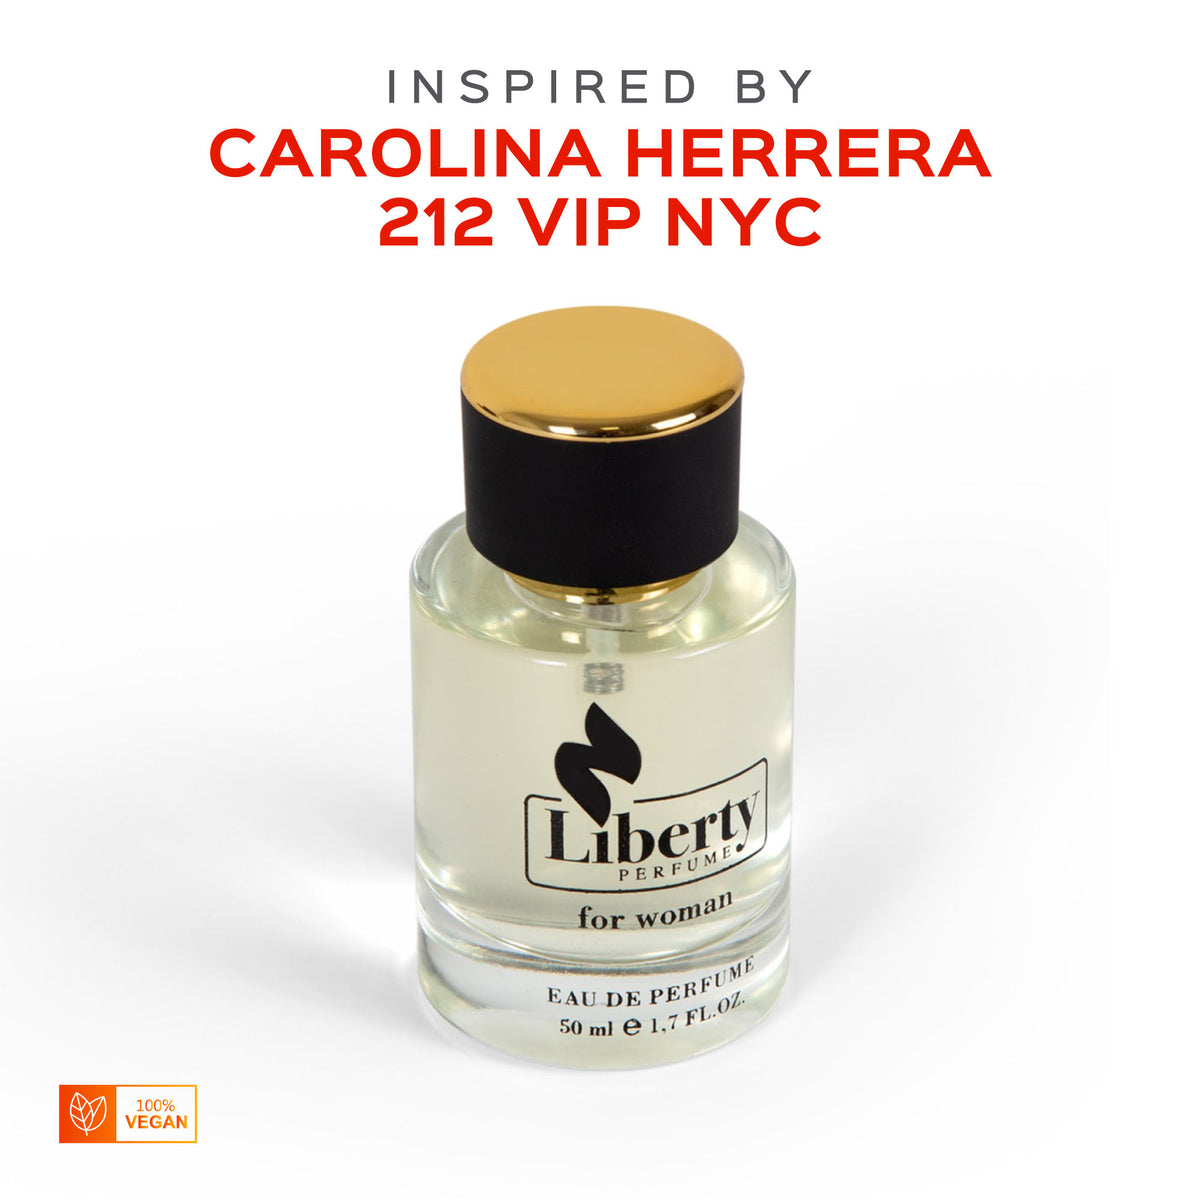 W18 for – $39.99 Perfume Women Carolina Herrera Liberty - Inspired Vip 212 by